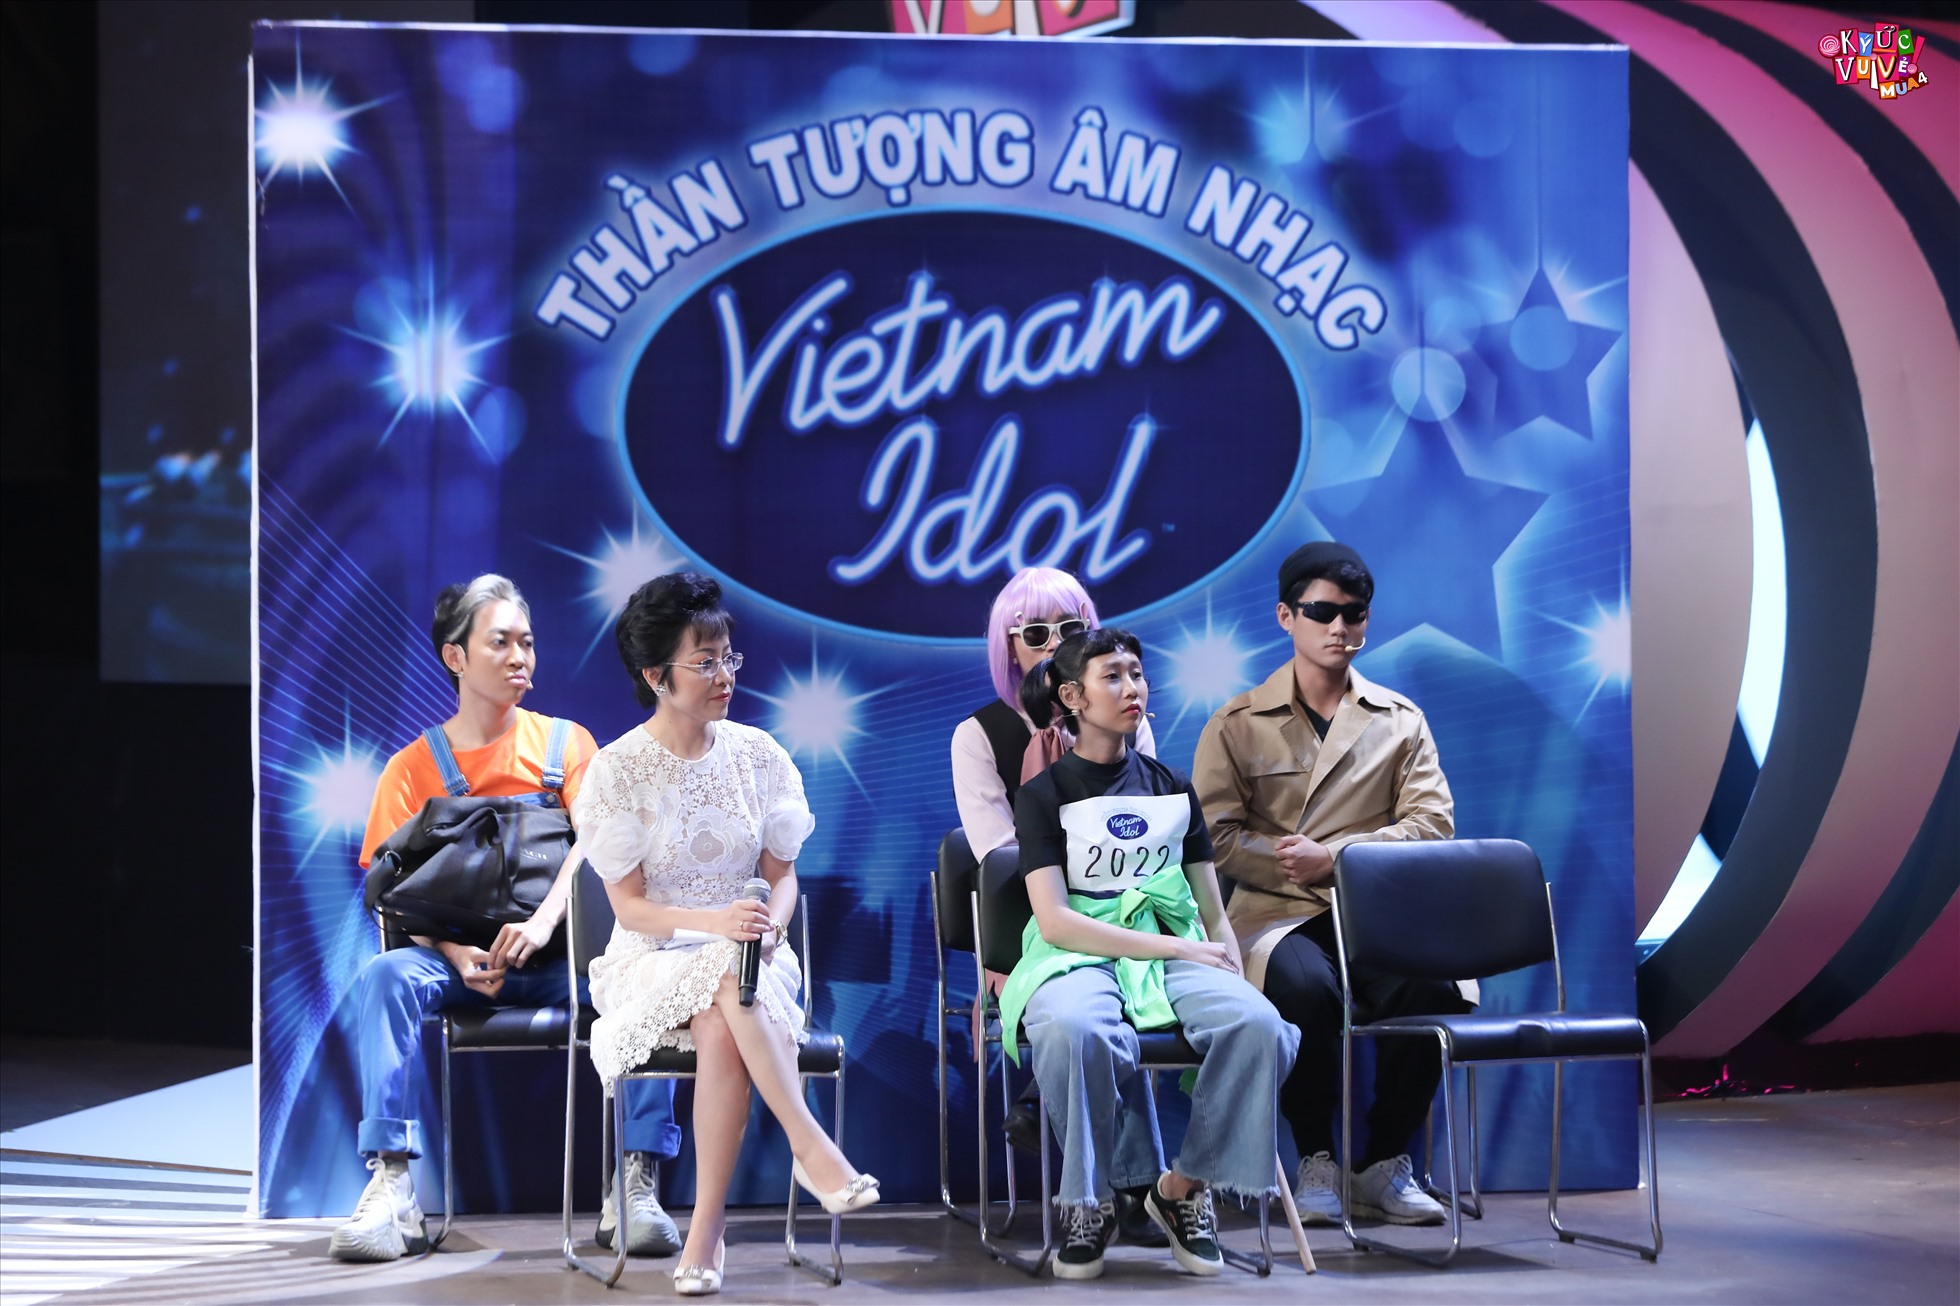 Sân khấu “Vietnam Idol” được tái hiện trong “Ký ức vui vẻ“. Ảnh: NSX.